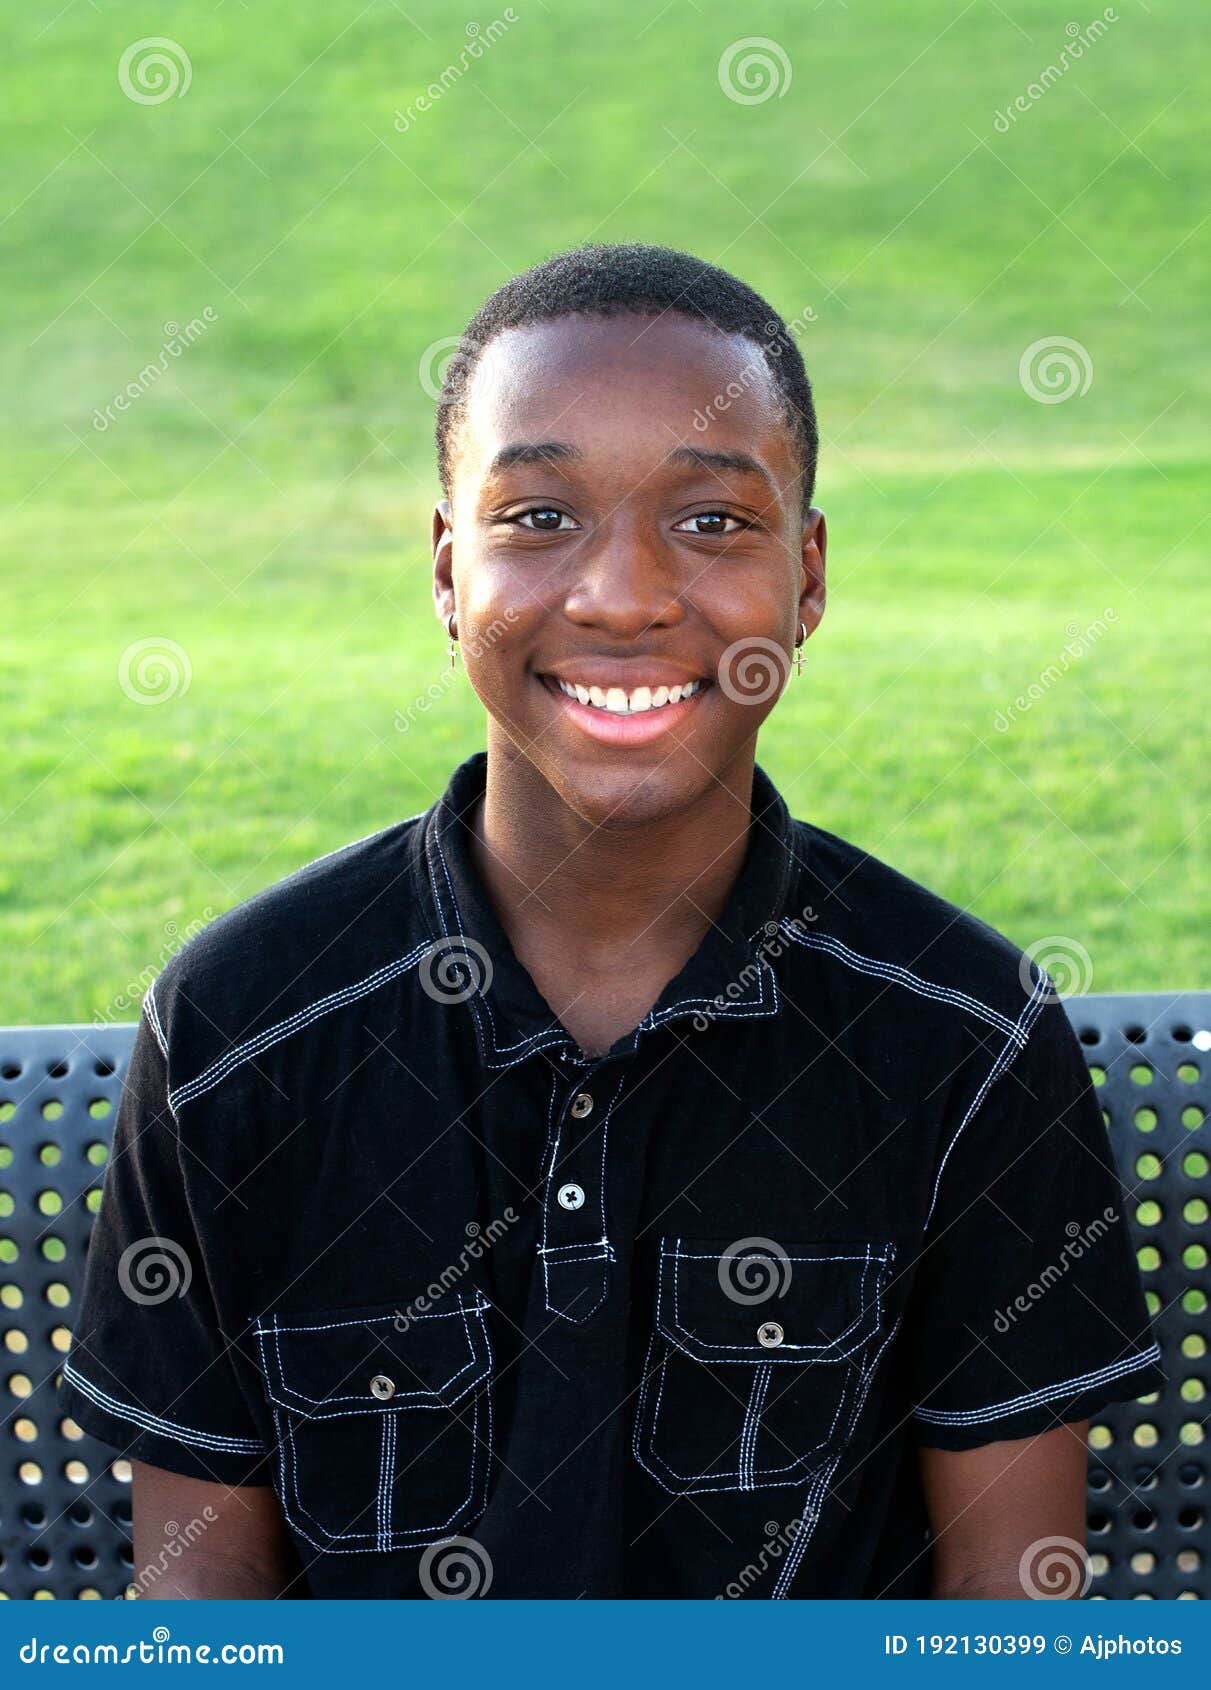 happy black teen boy outside